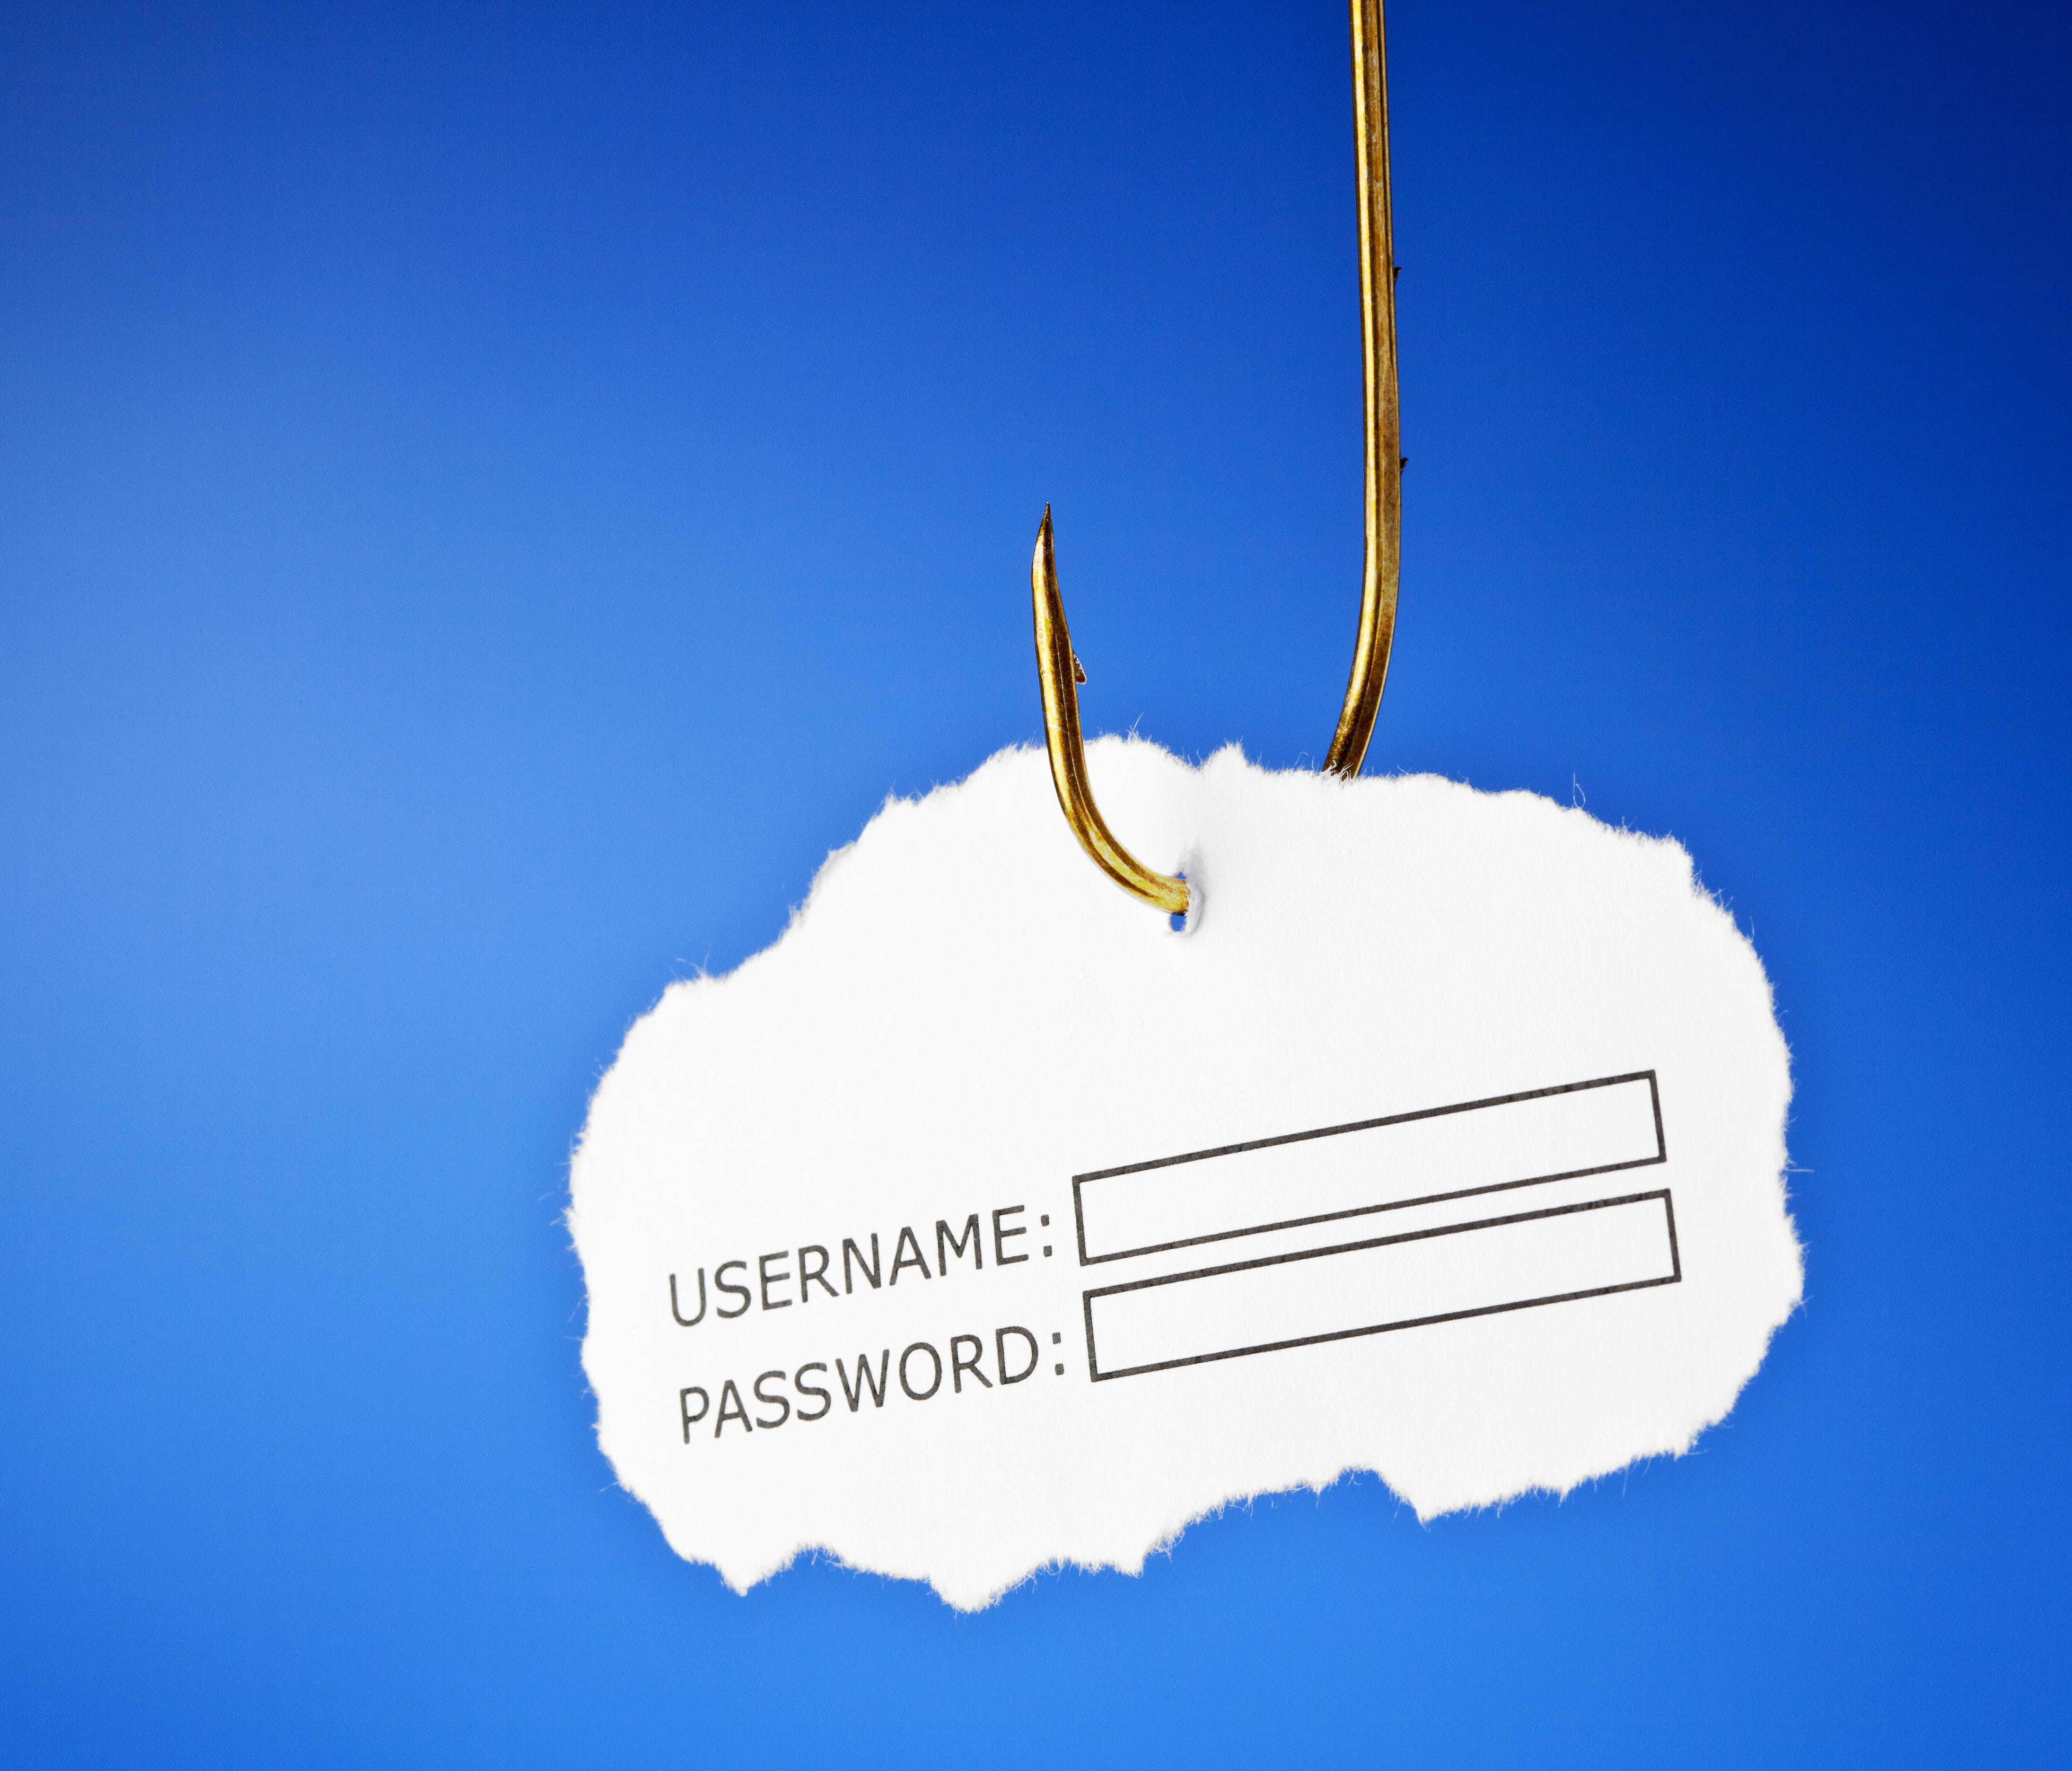 No. 1 cyberattack method: phishing